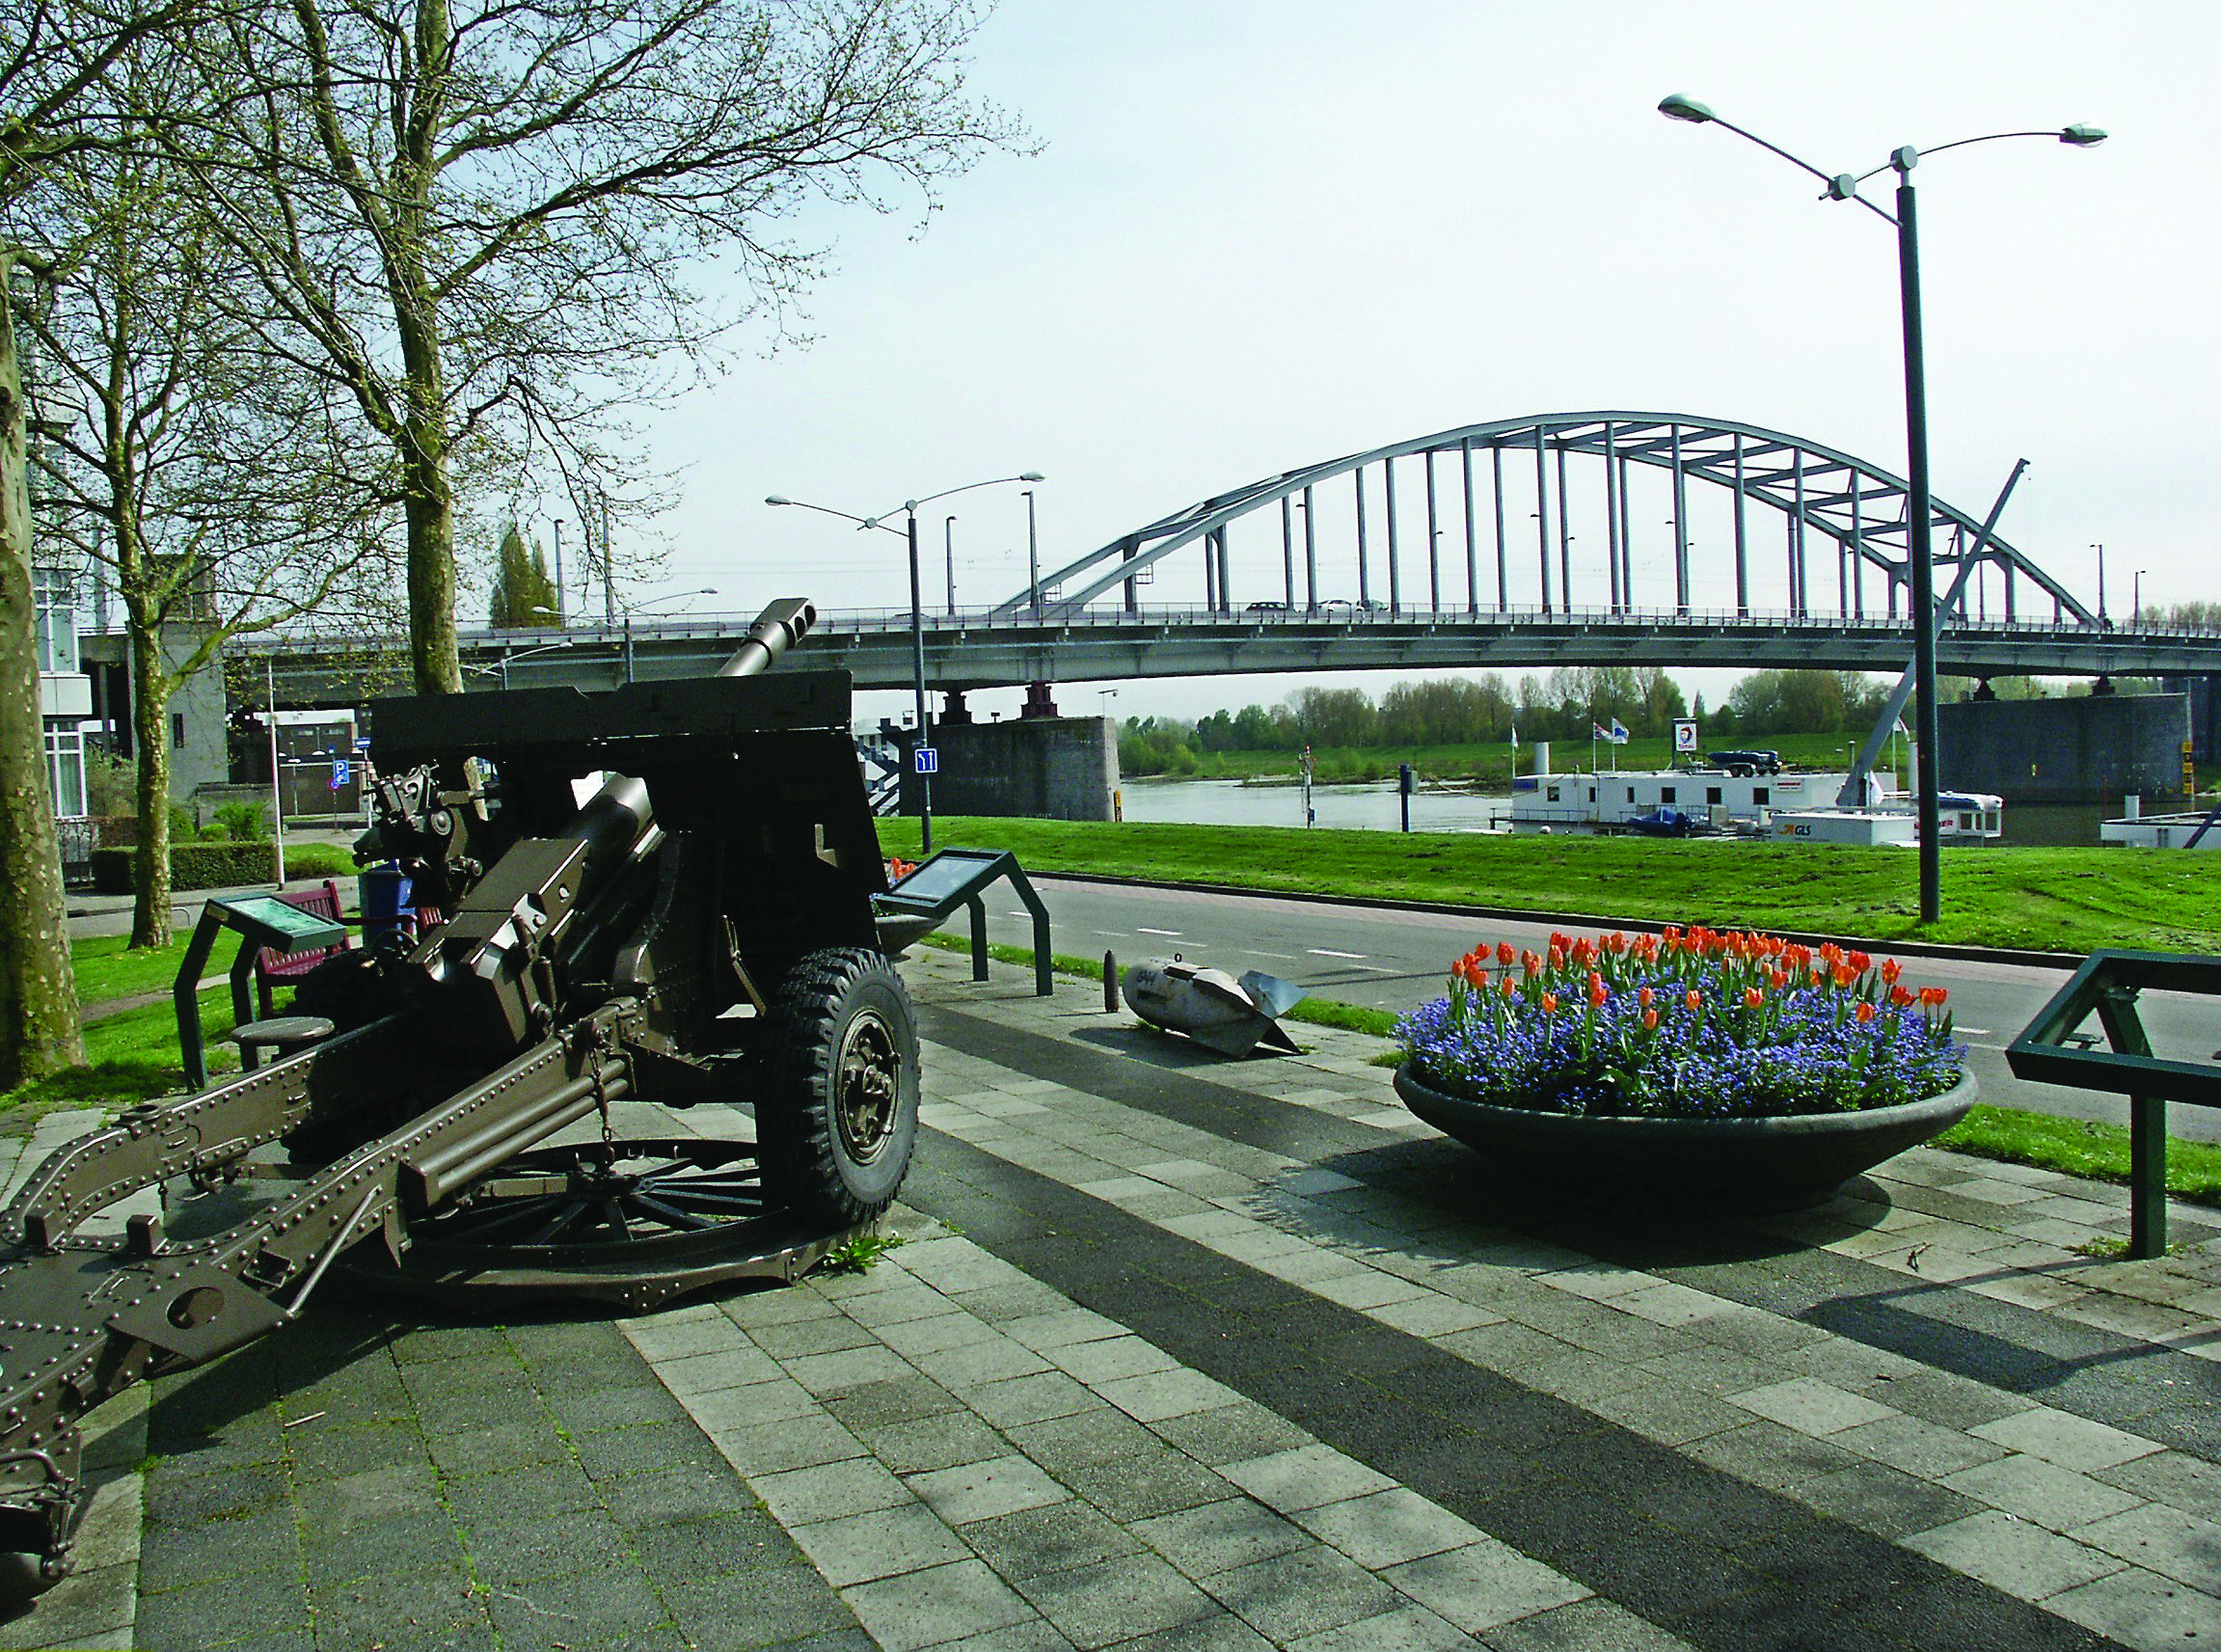 The Bridge at Arnhem